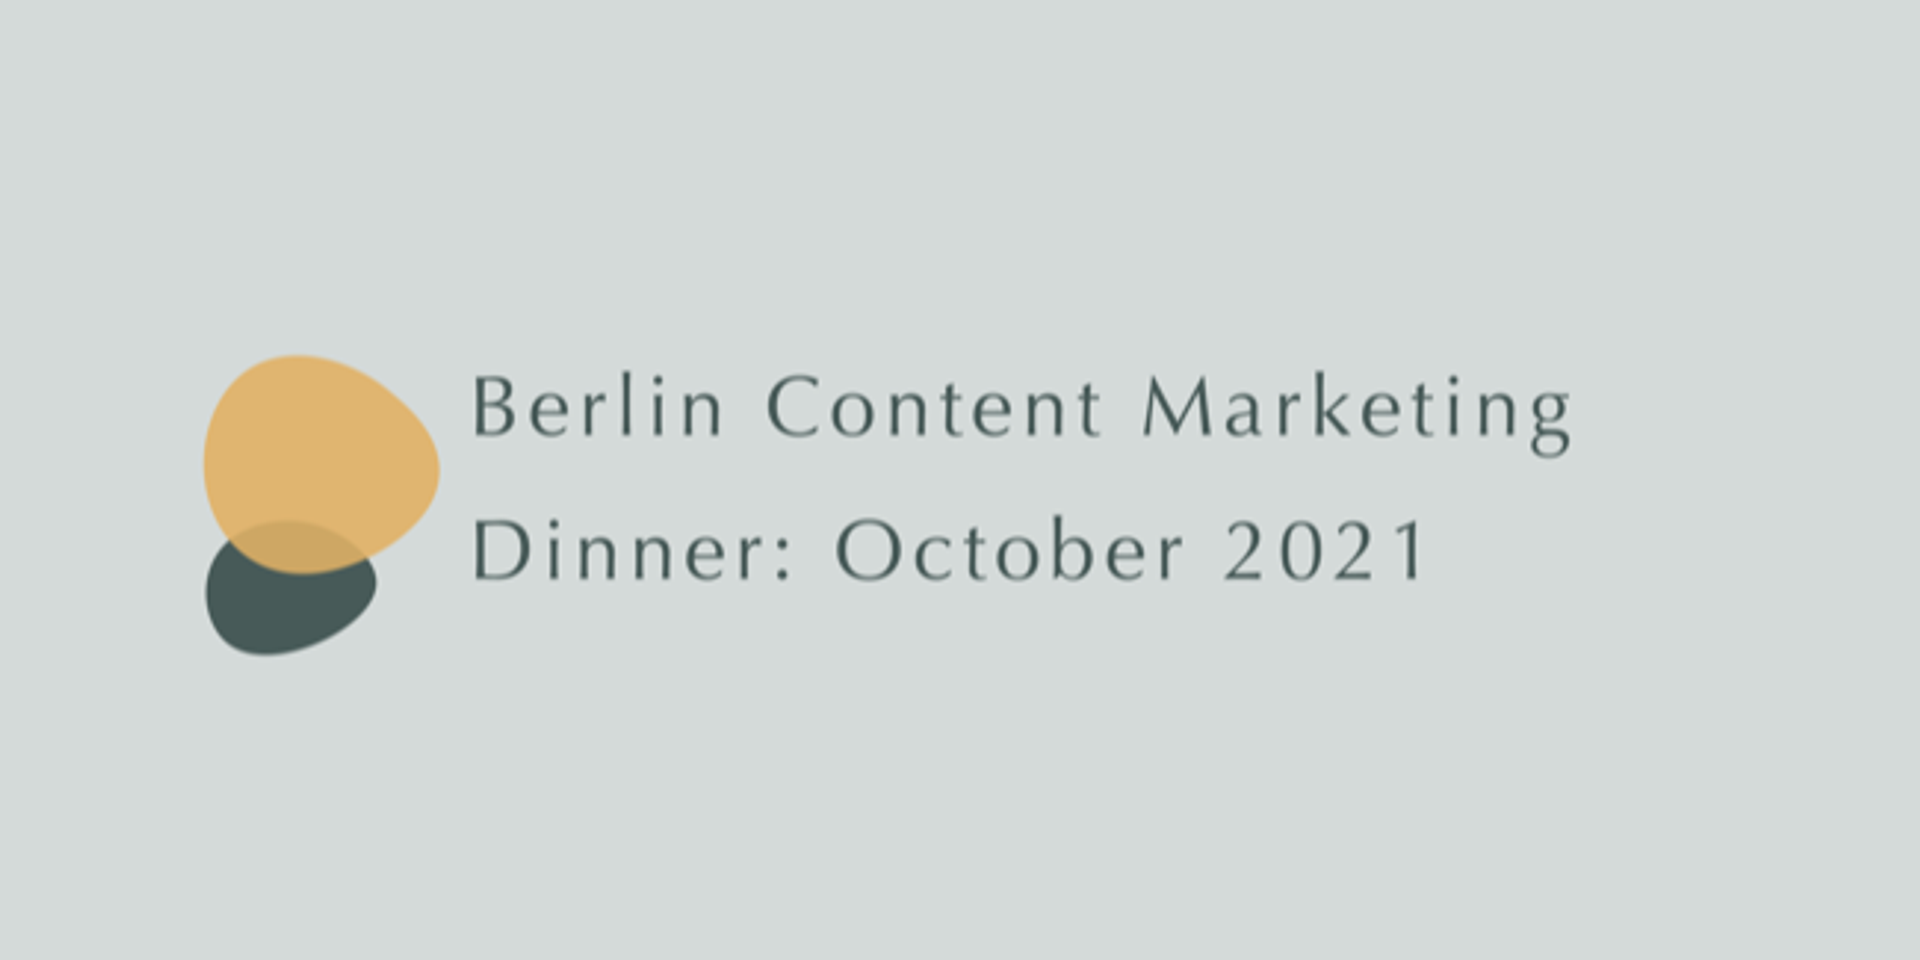 Berlin Content Marketing Dinner: October 2021